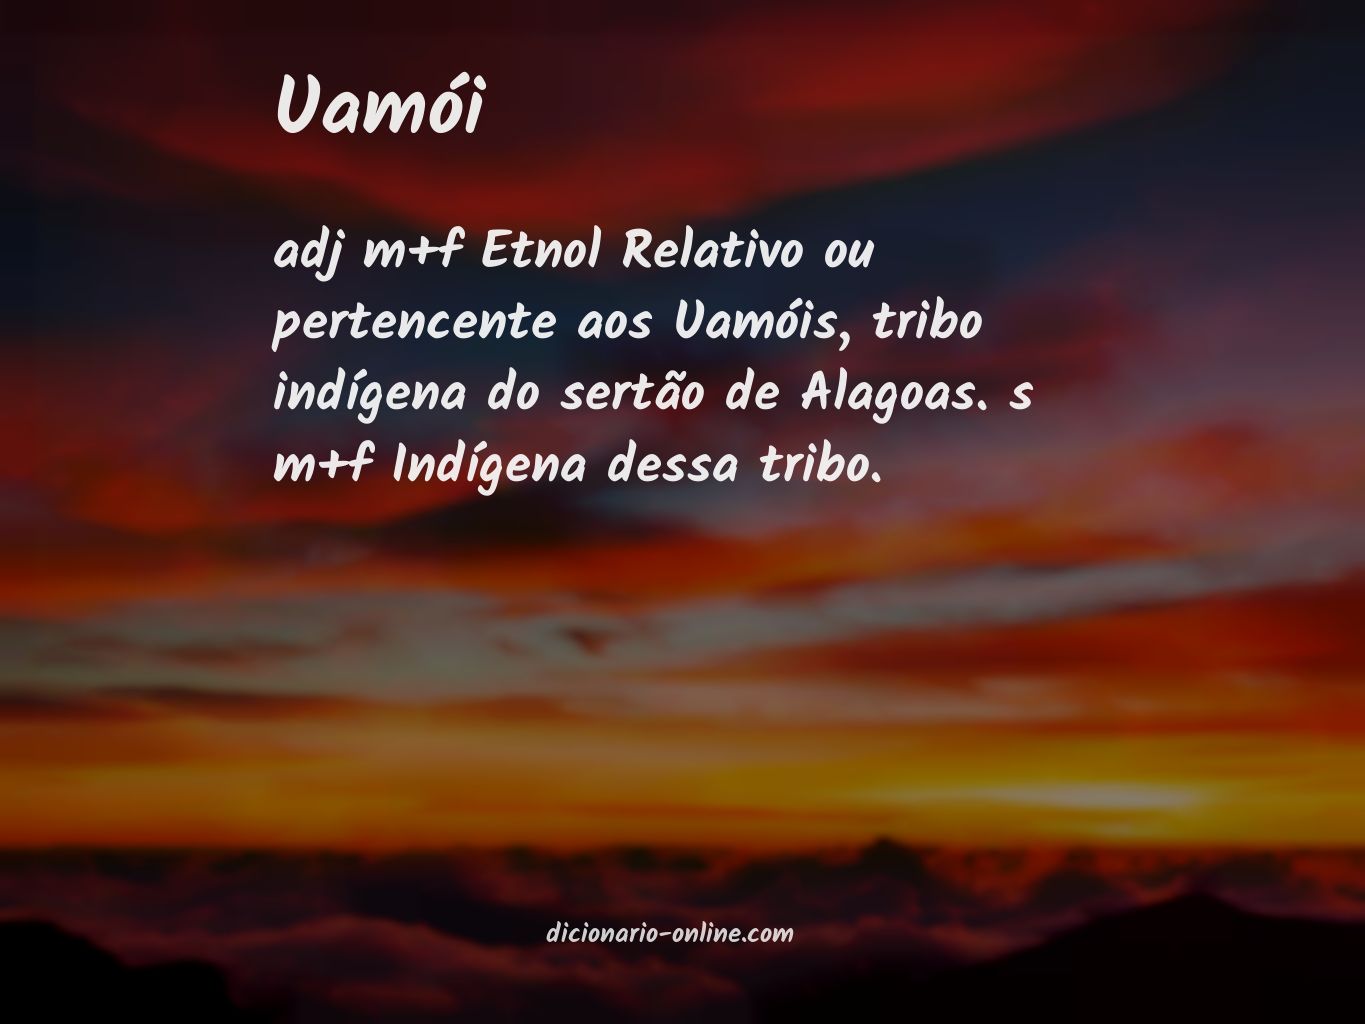 Significado de uamói